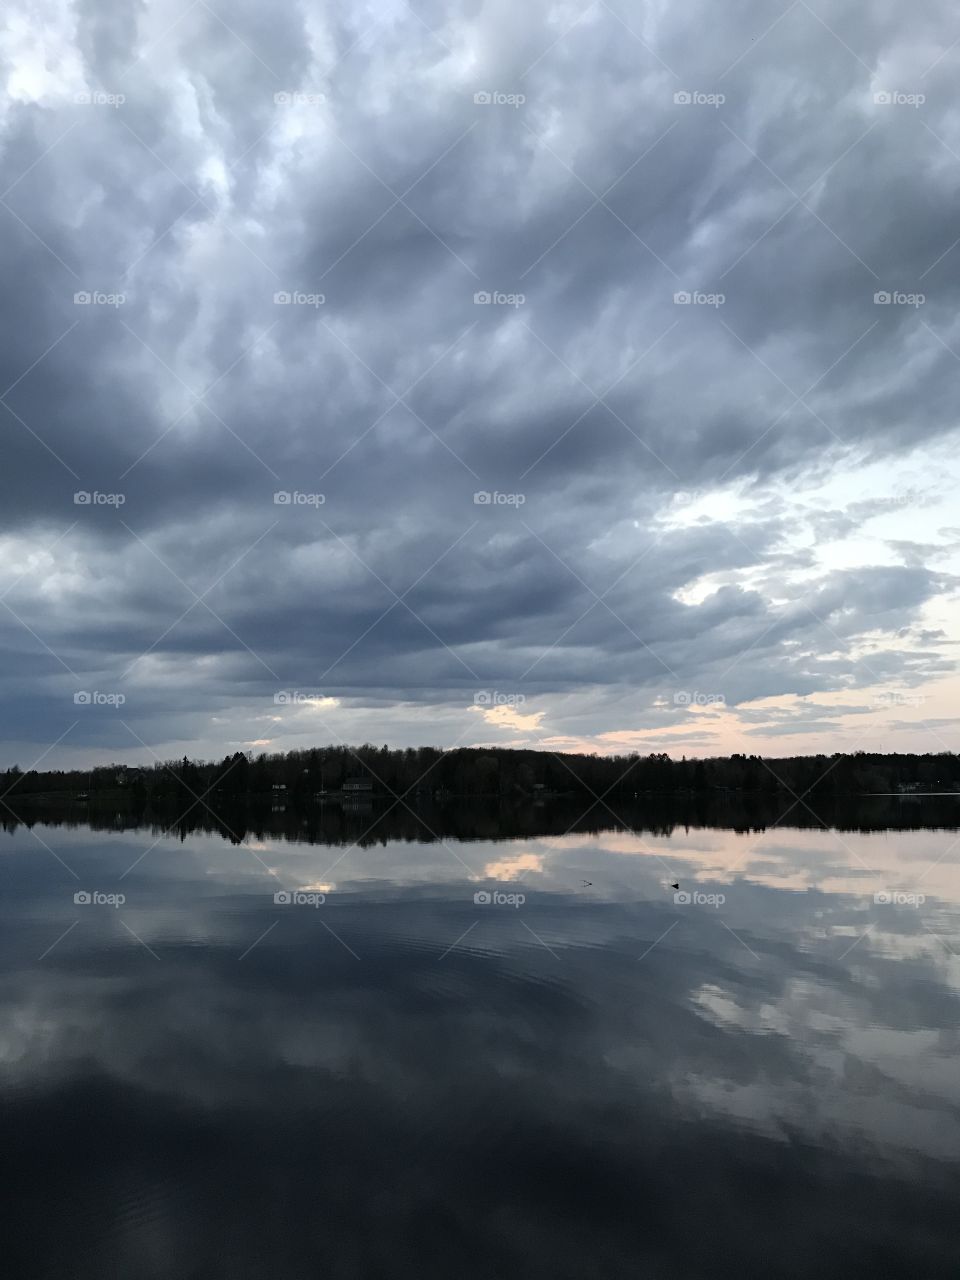 Cloudy sunrise over a lake